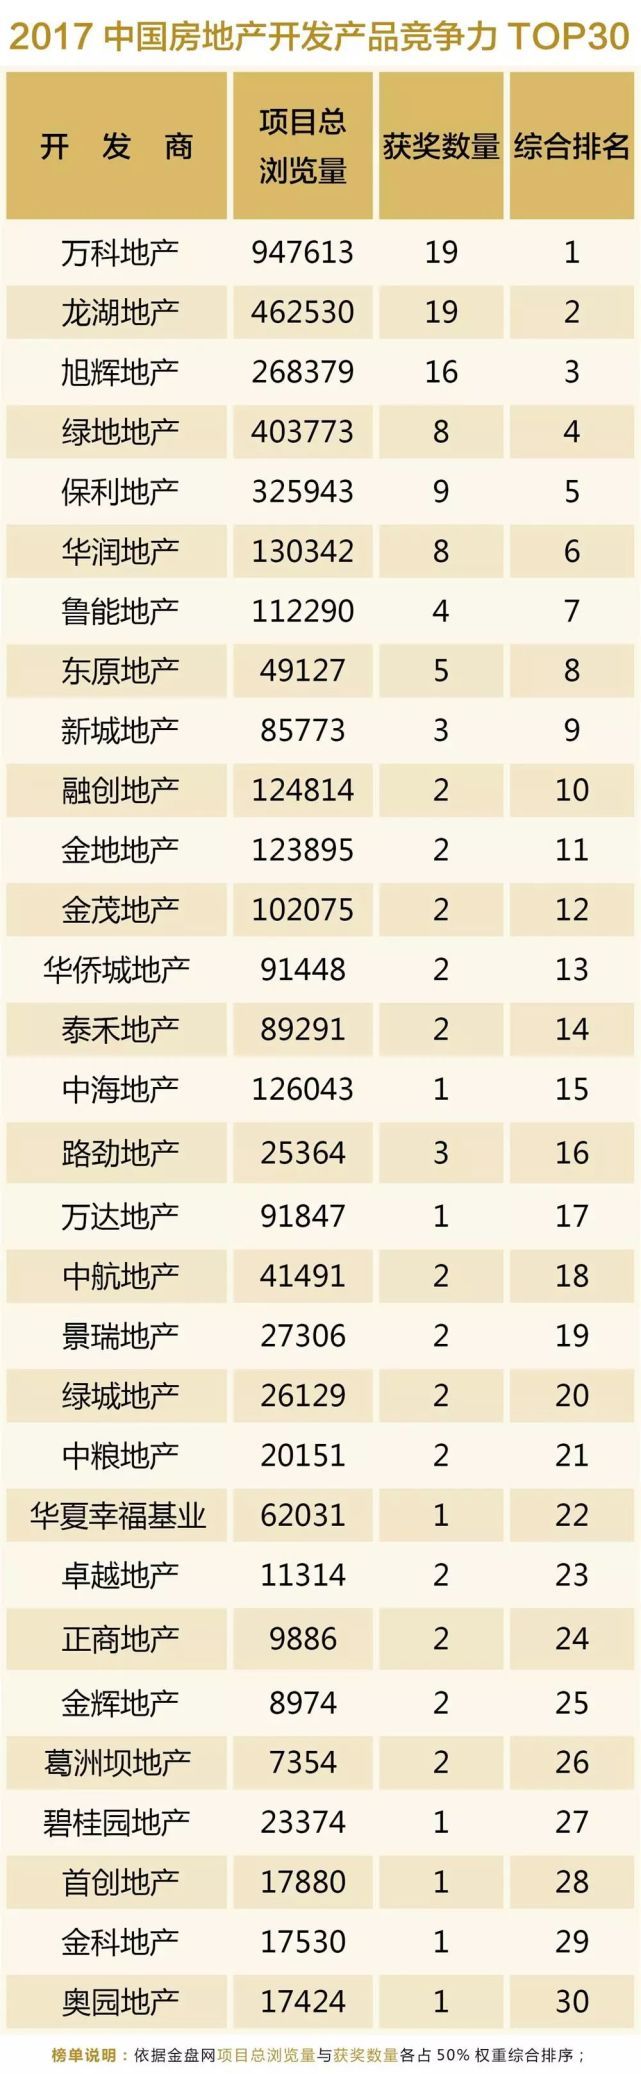 2017中国房地产开发产品竞争力TOP30